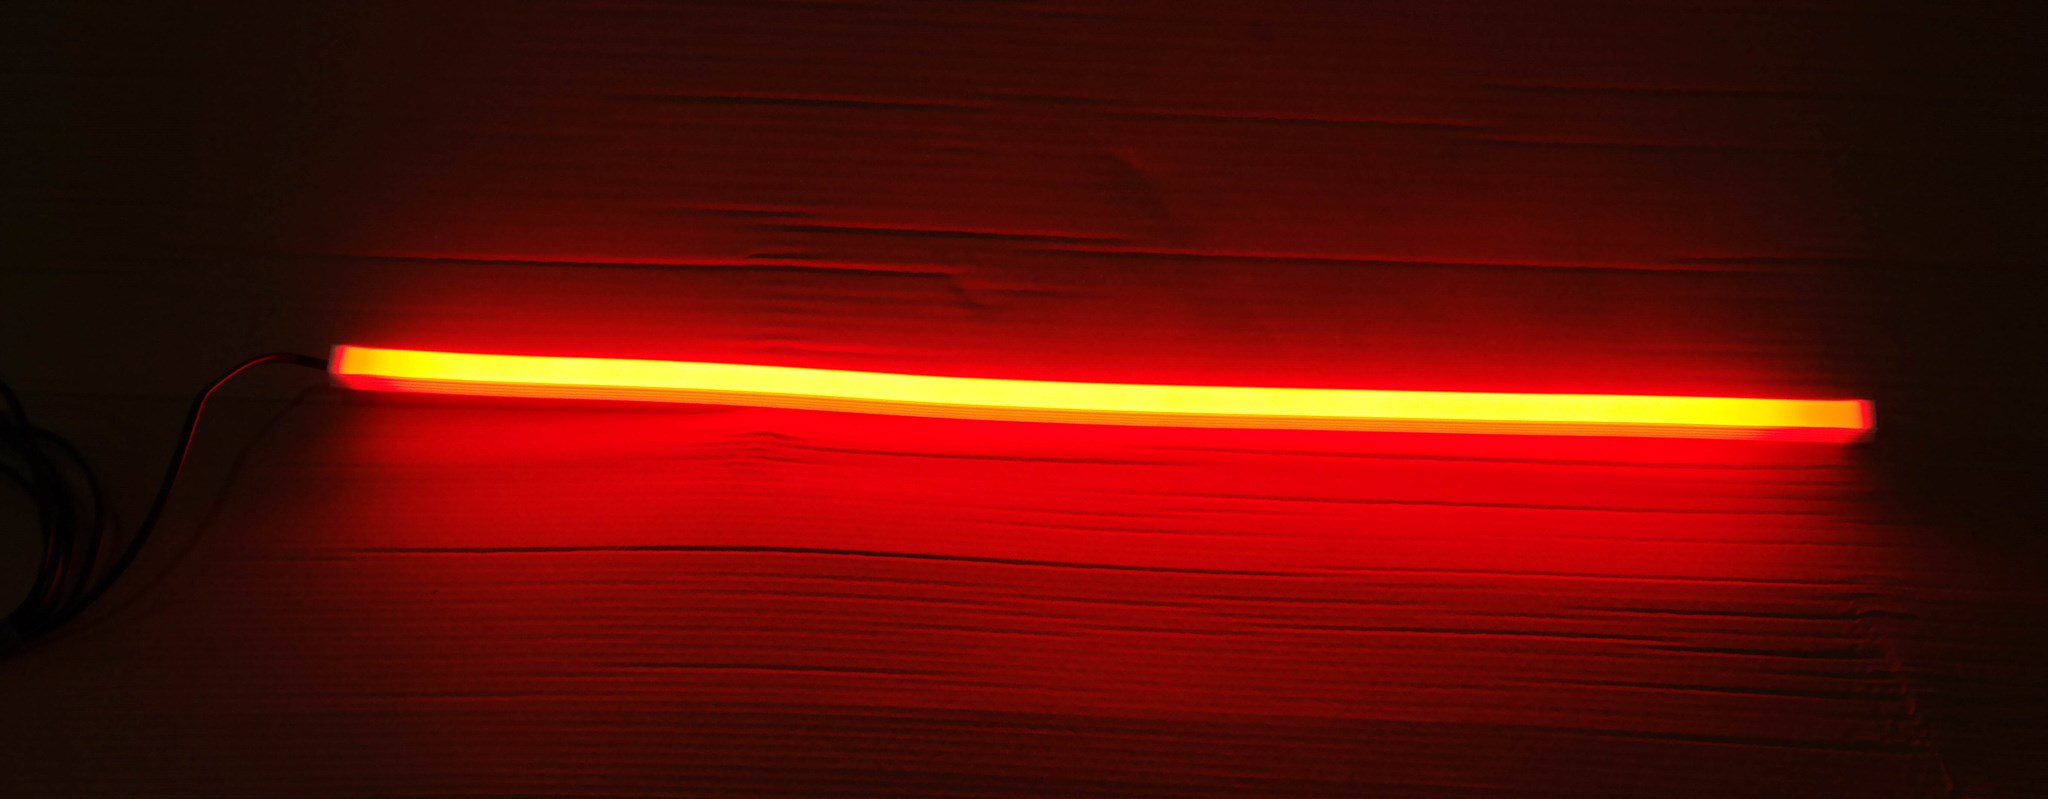 Bild von 31-7904-207 Aspöck Flex-LED rot 24Volt Länge 0,65m Kabellänge 3,0m